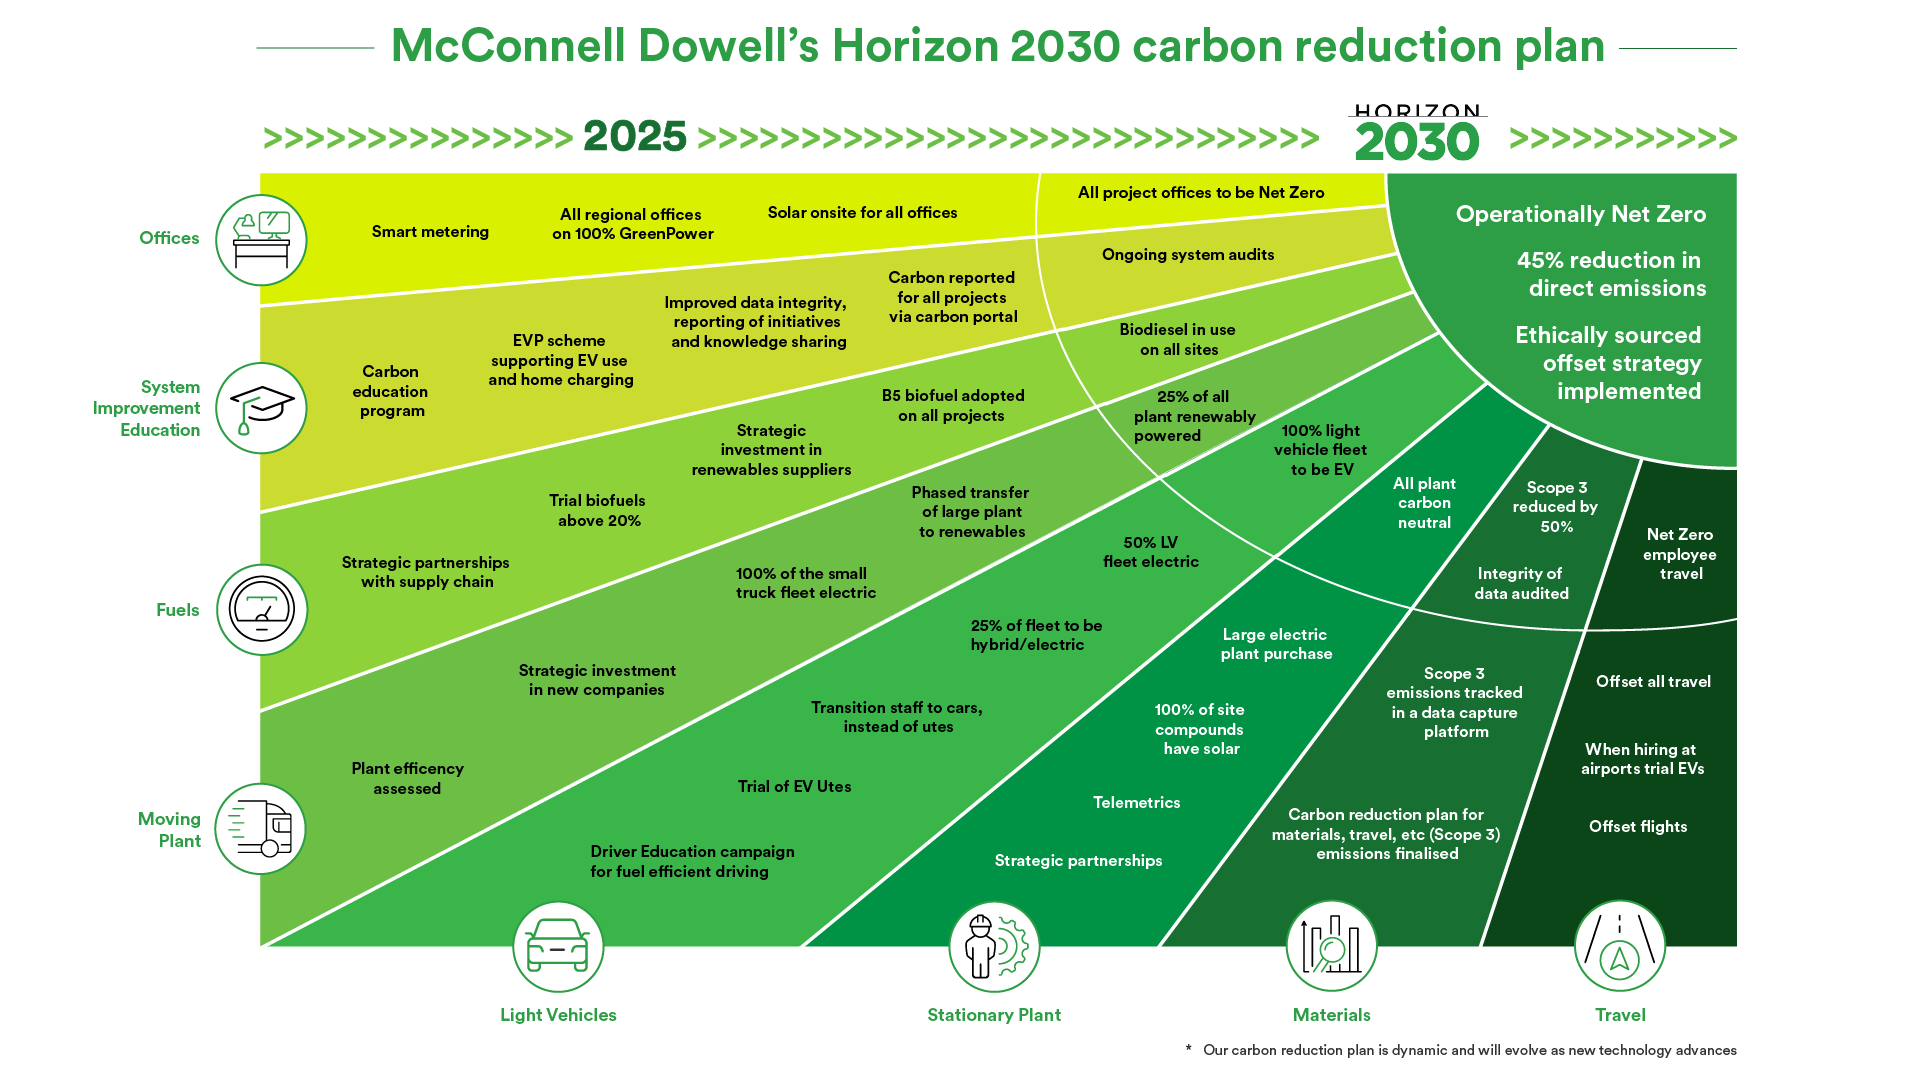 MCD Carbon roadmap 2030